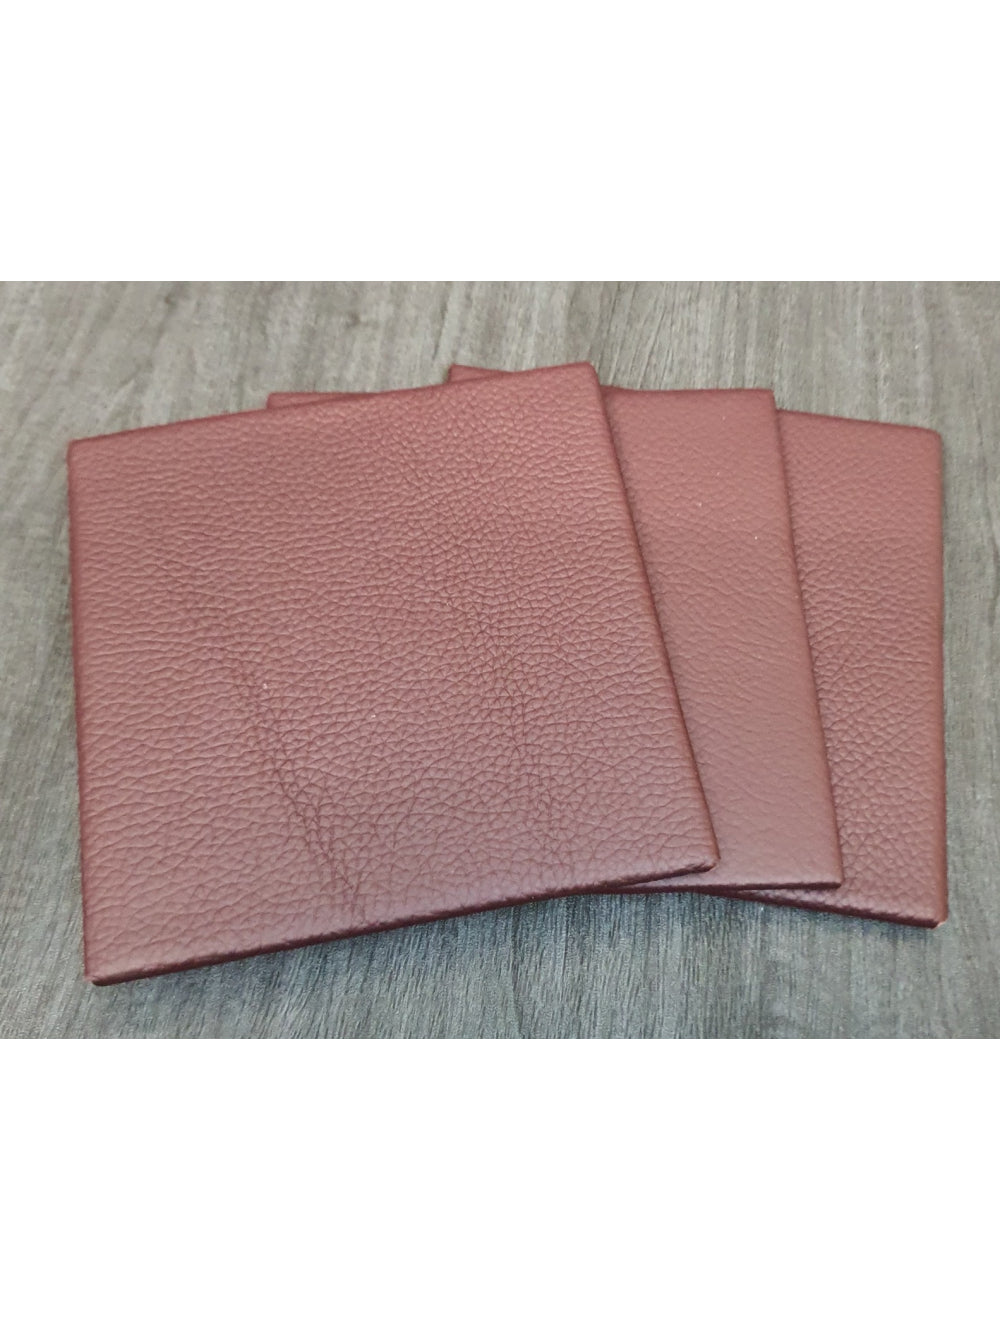 Dark Grapeshelly Leather Coaster- 10 cm SQ (artículo de venta)